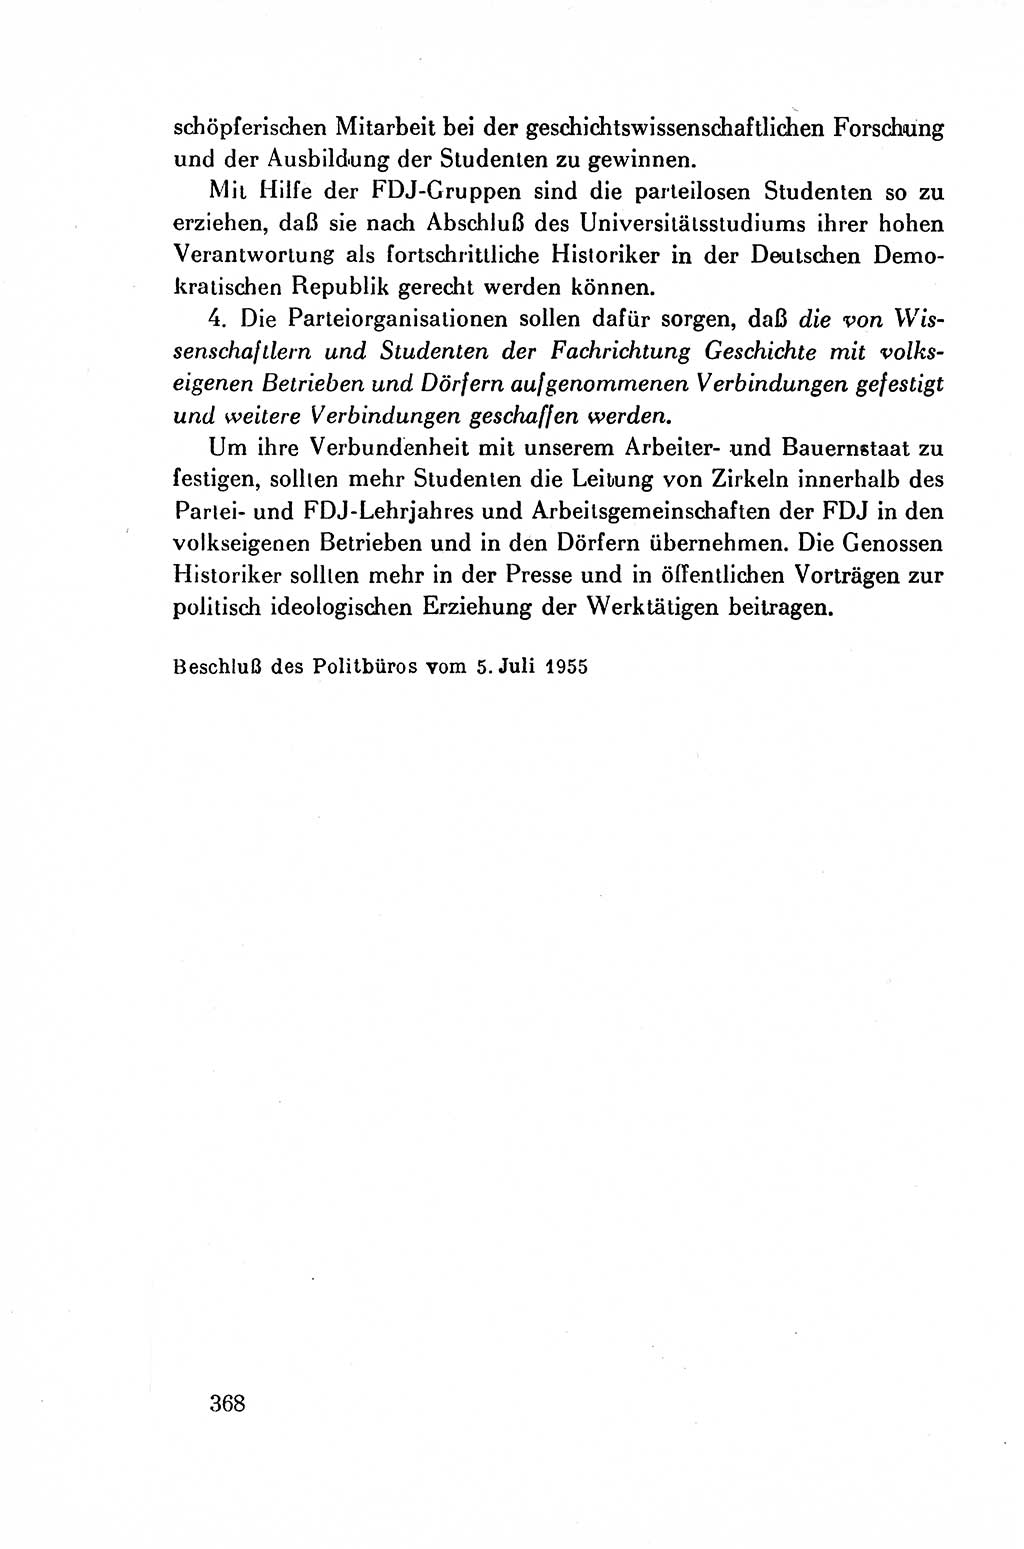 Dokumente der Sozialistischen Einheitspartei Deutschlands (SED) [Deutsche Demokratische Republik (DDR)] 1954-1955, Seite 368 (Dok. SED DDR 1954-1955, S. 368)